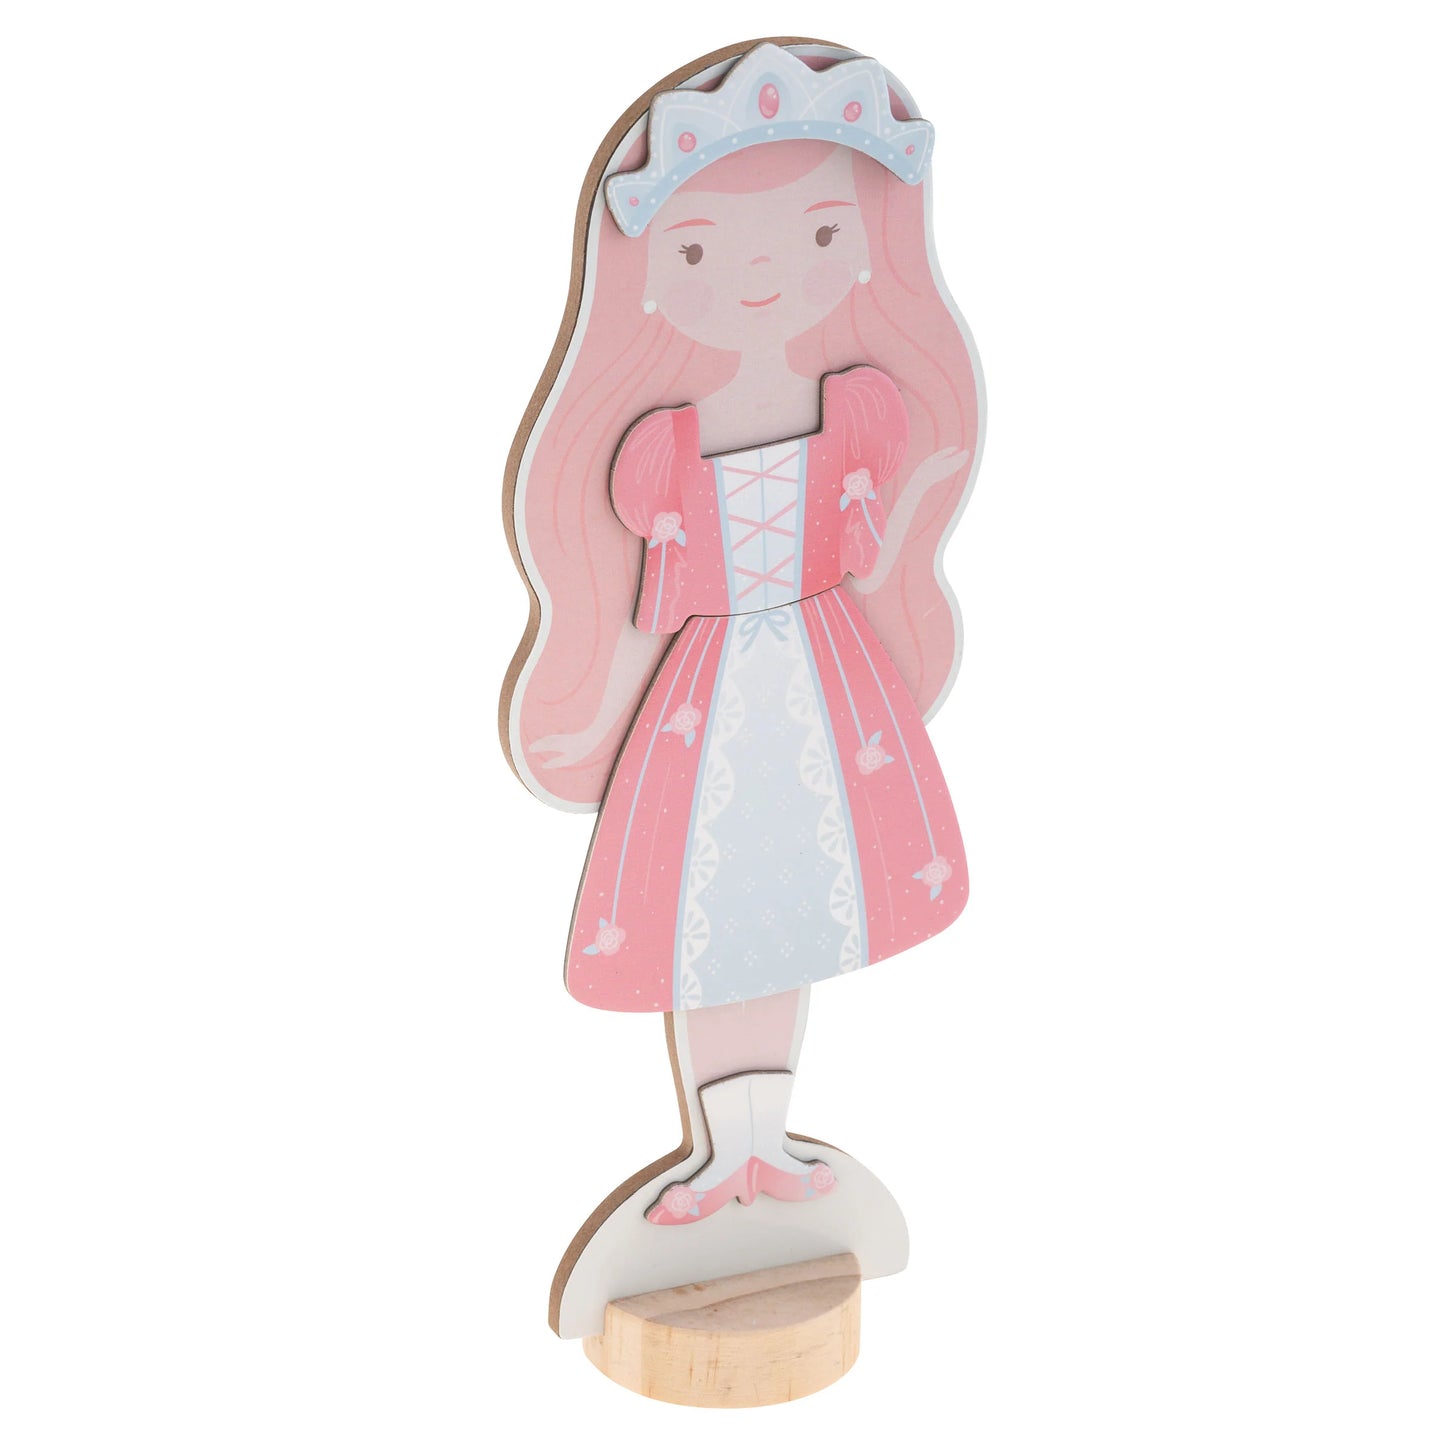 Fairytale Magnetic Dress Up Dolls  - Doodlebug's Children's Boutique